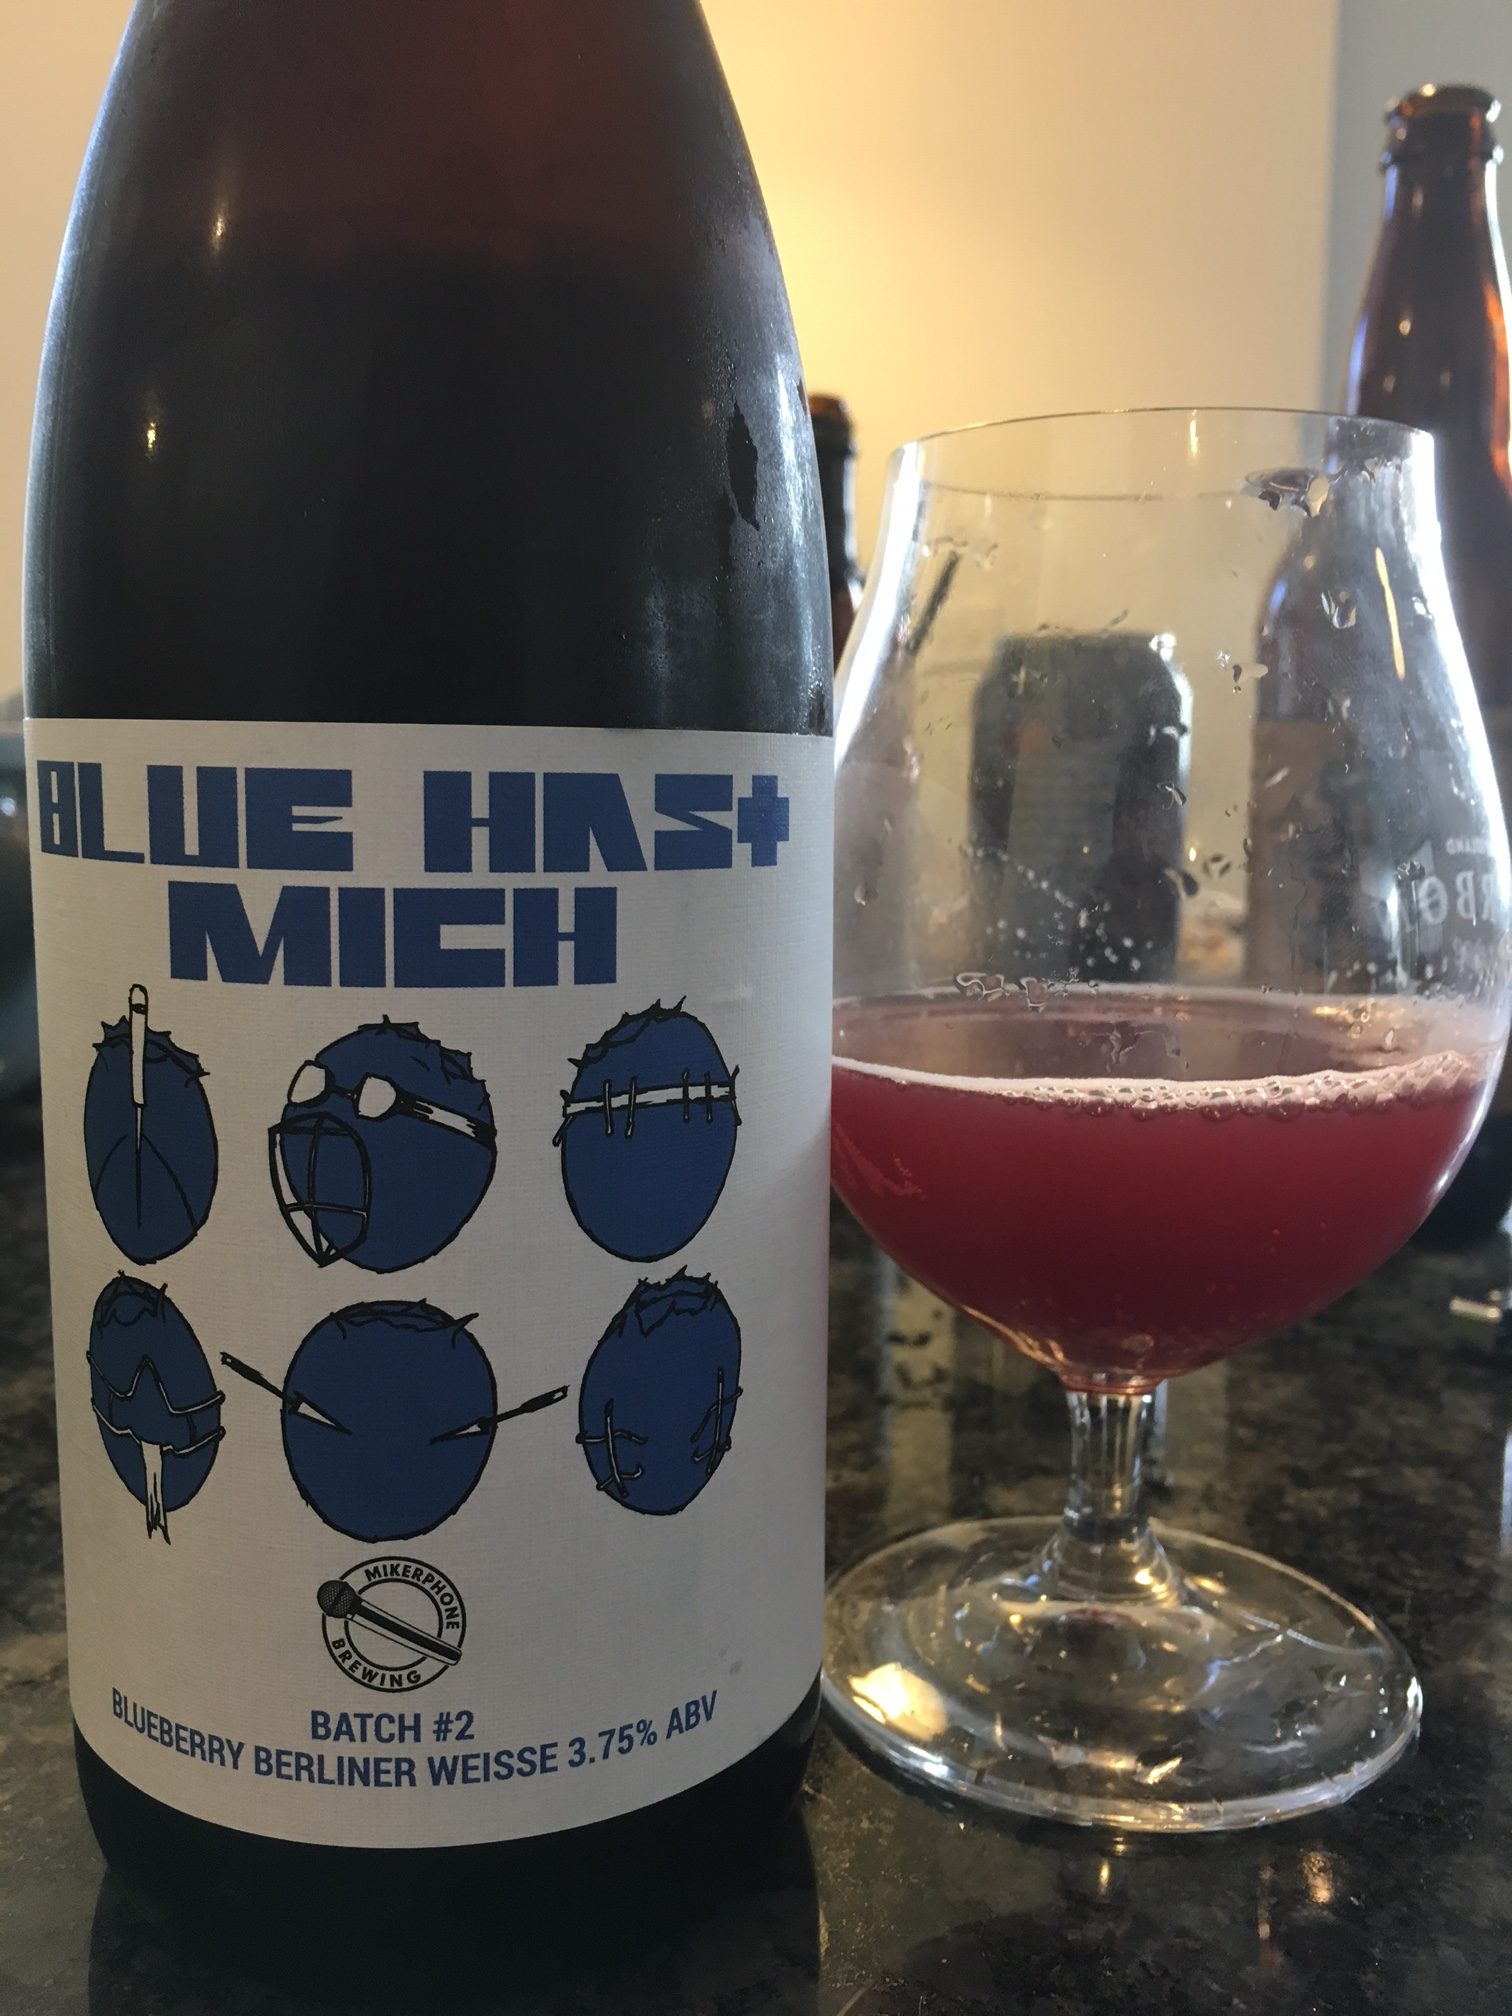 Mikerphone Brewing | Blue Hast Mich Batch #2